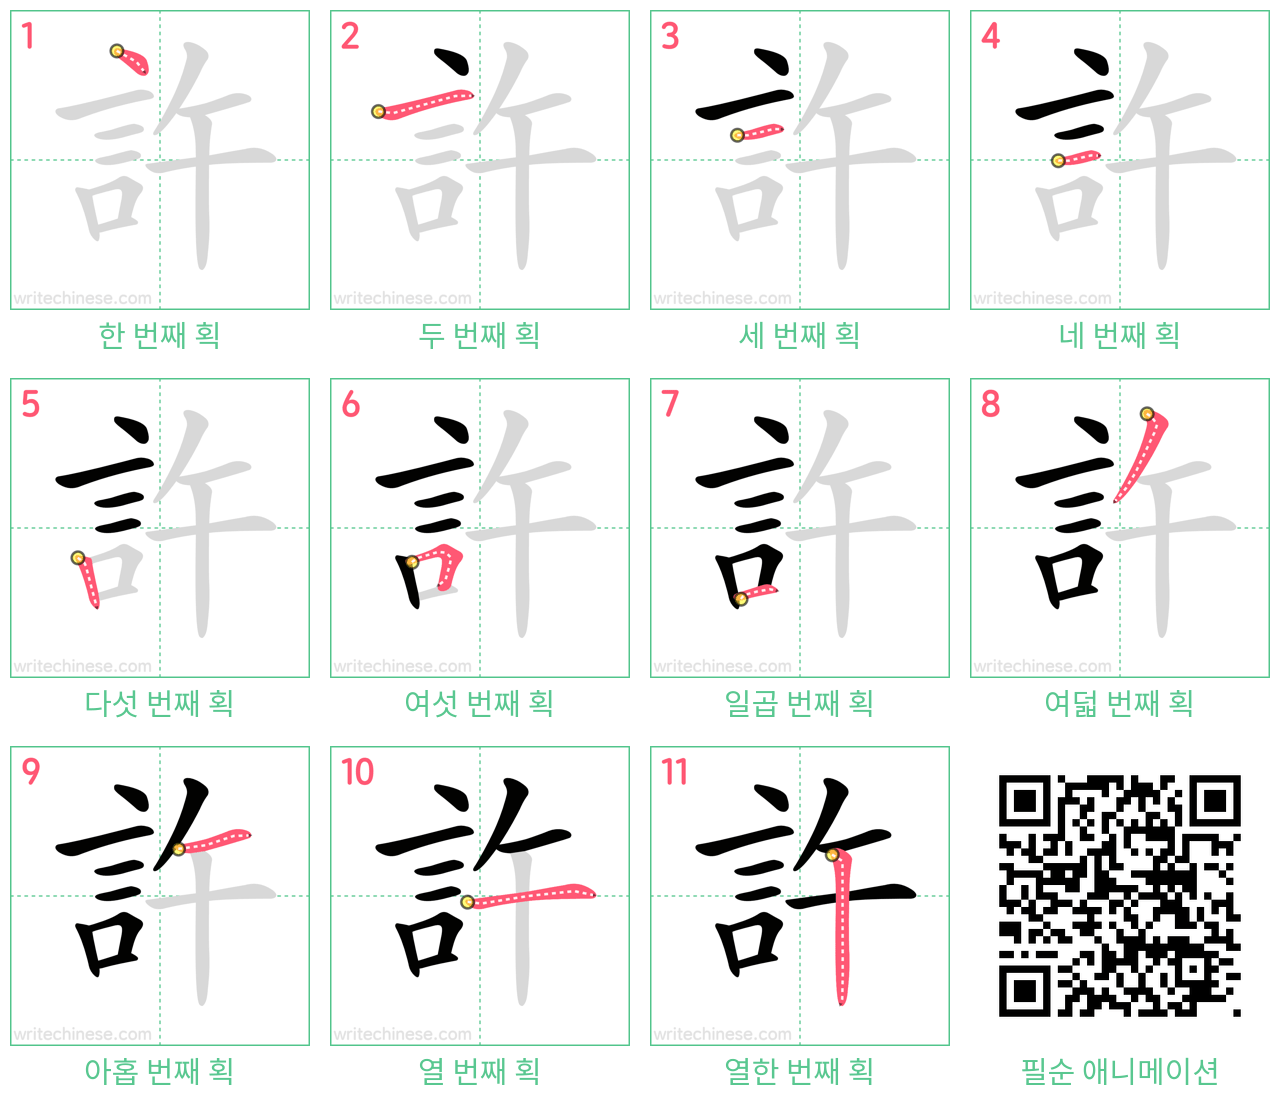 許 step-by-step stroke order diagrams